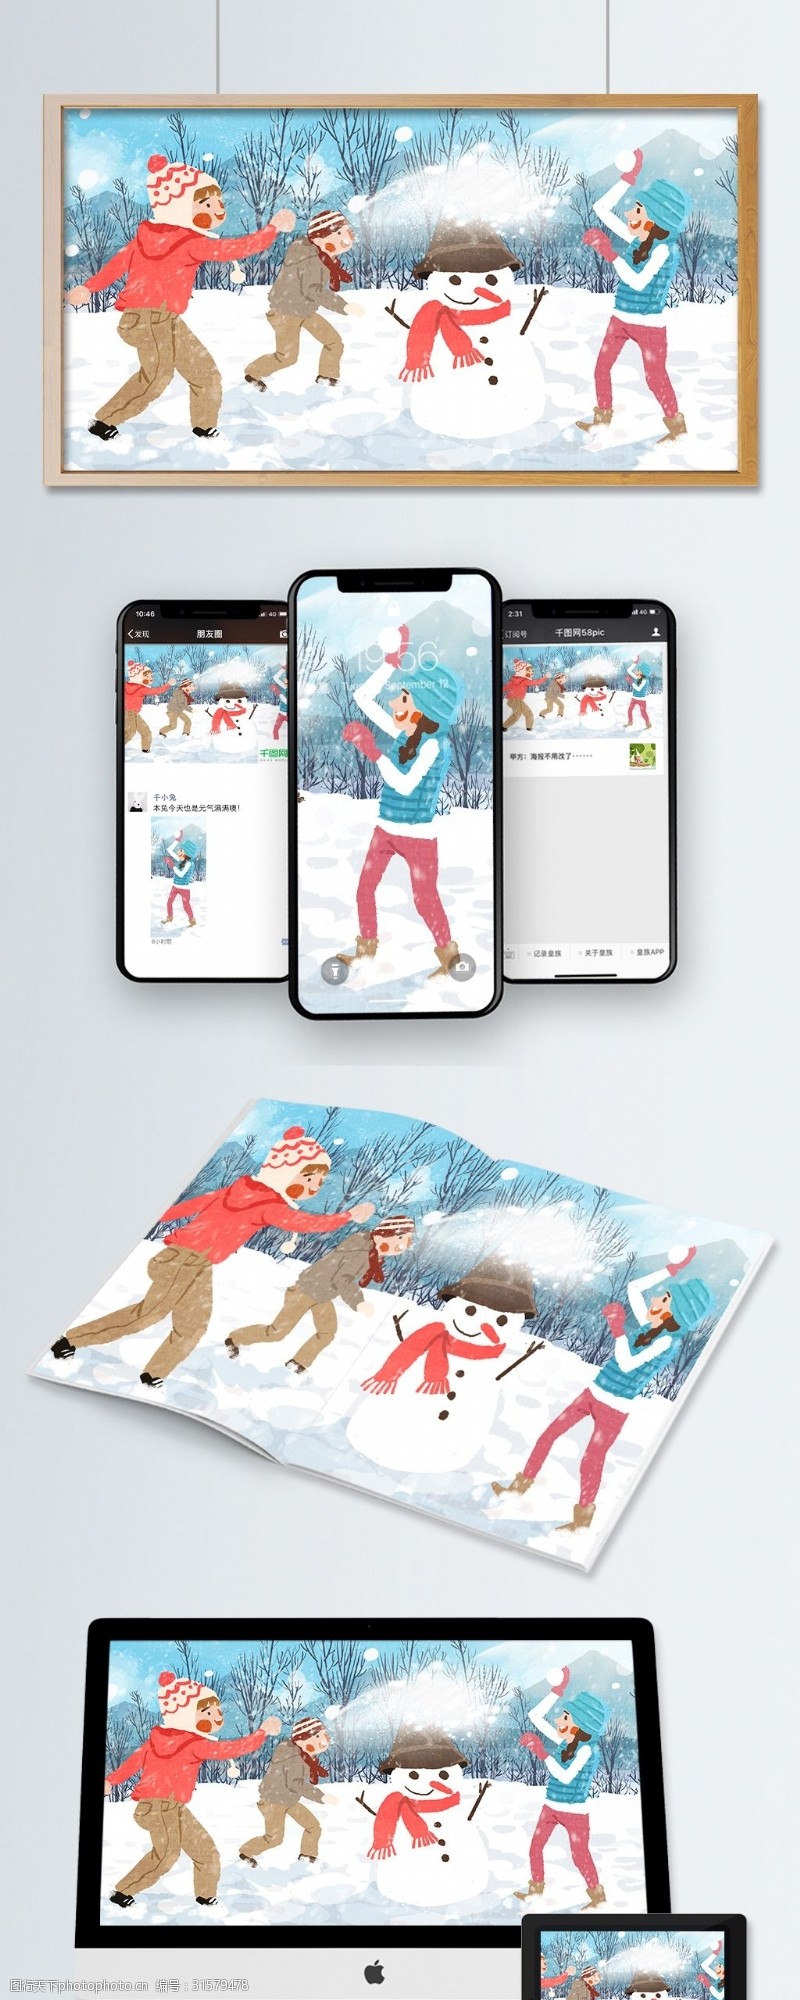 户外玩耍冬季最开心和小伙伴一起打雪仗原创手绘插画